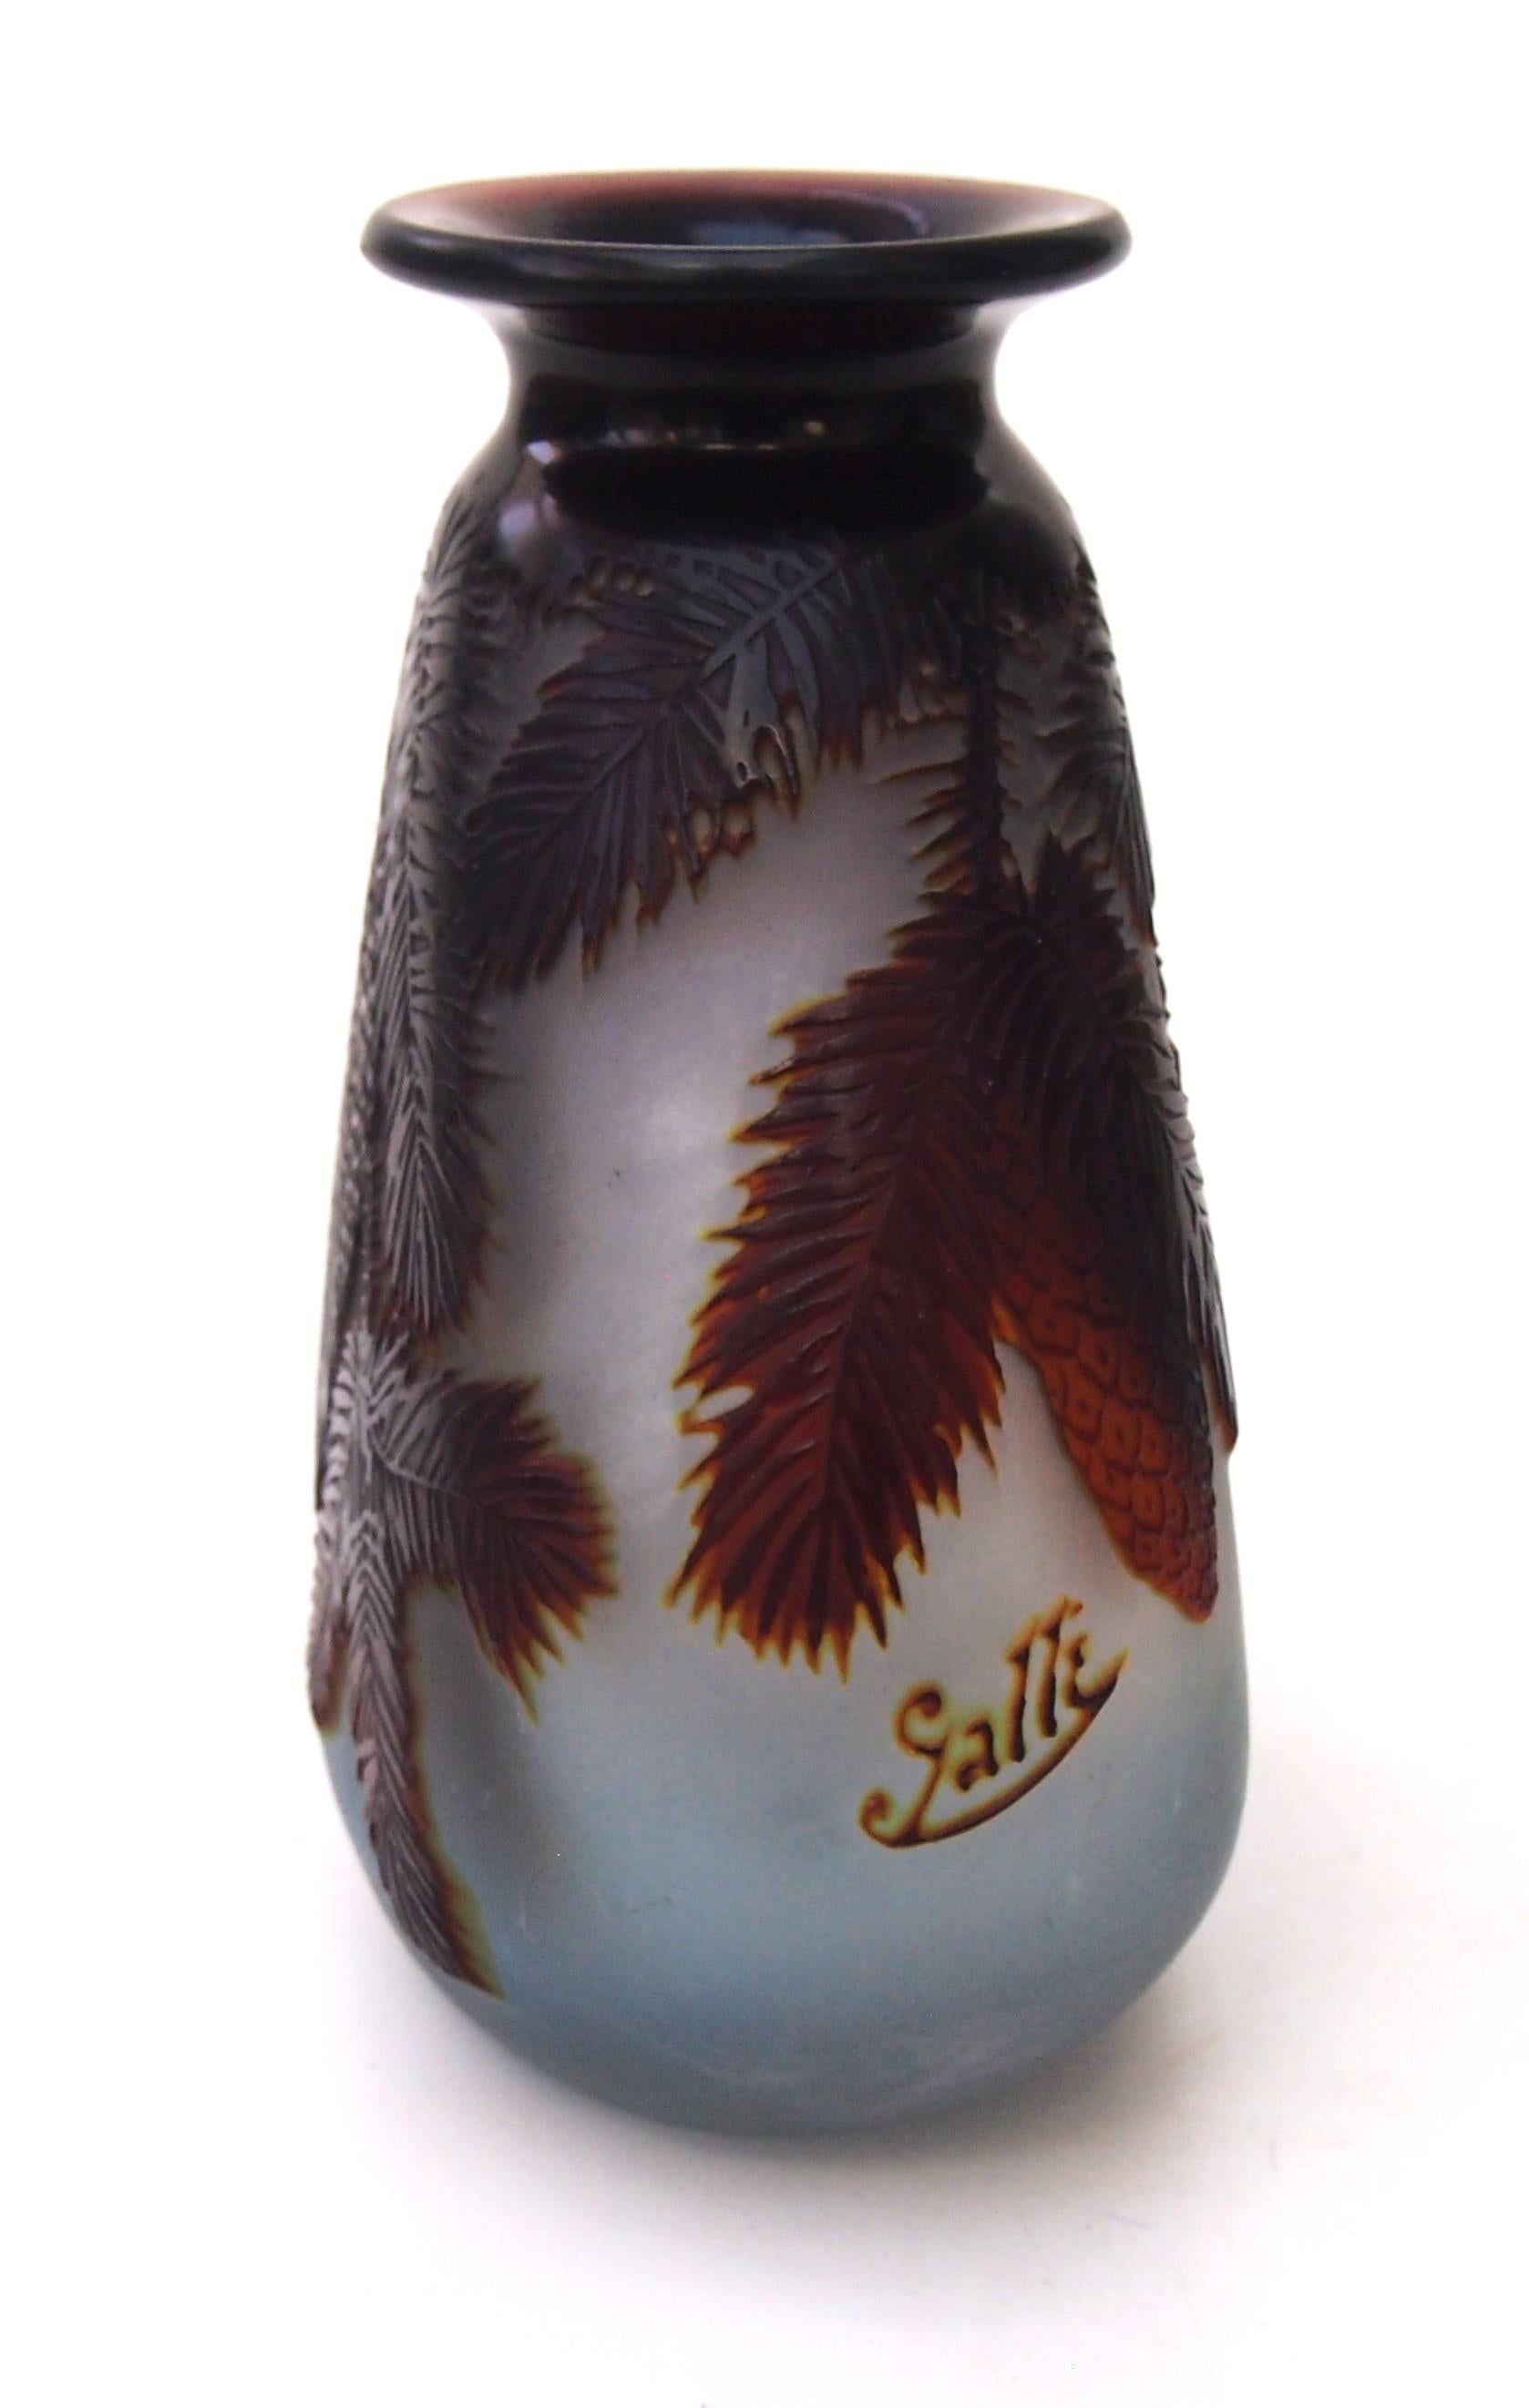 Fabelhafte Kamee-Vase von Emile Galle mit tiefem Schliff in einer ungewöhnlichen, fast dreieckigen Form und einer weit geöffneten Mündung. Die Farben sind tiefbraun und mittelbraun auf blassblau. Er ist mit spektakulären Tannenzapfen und stacheligen